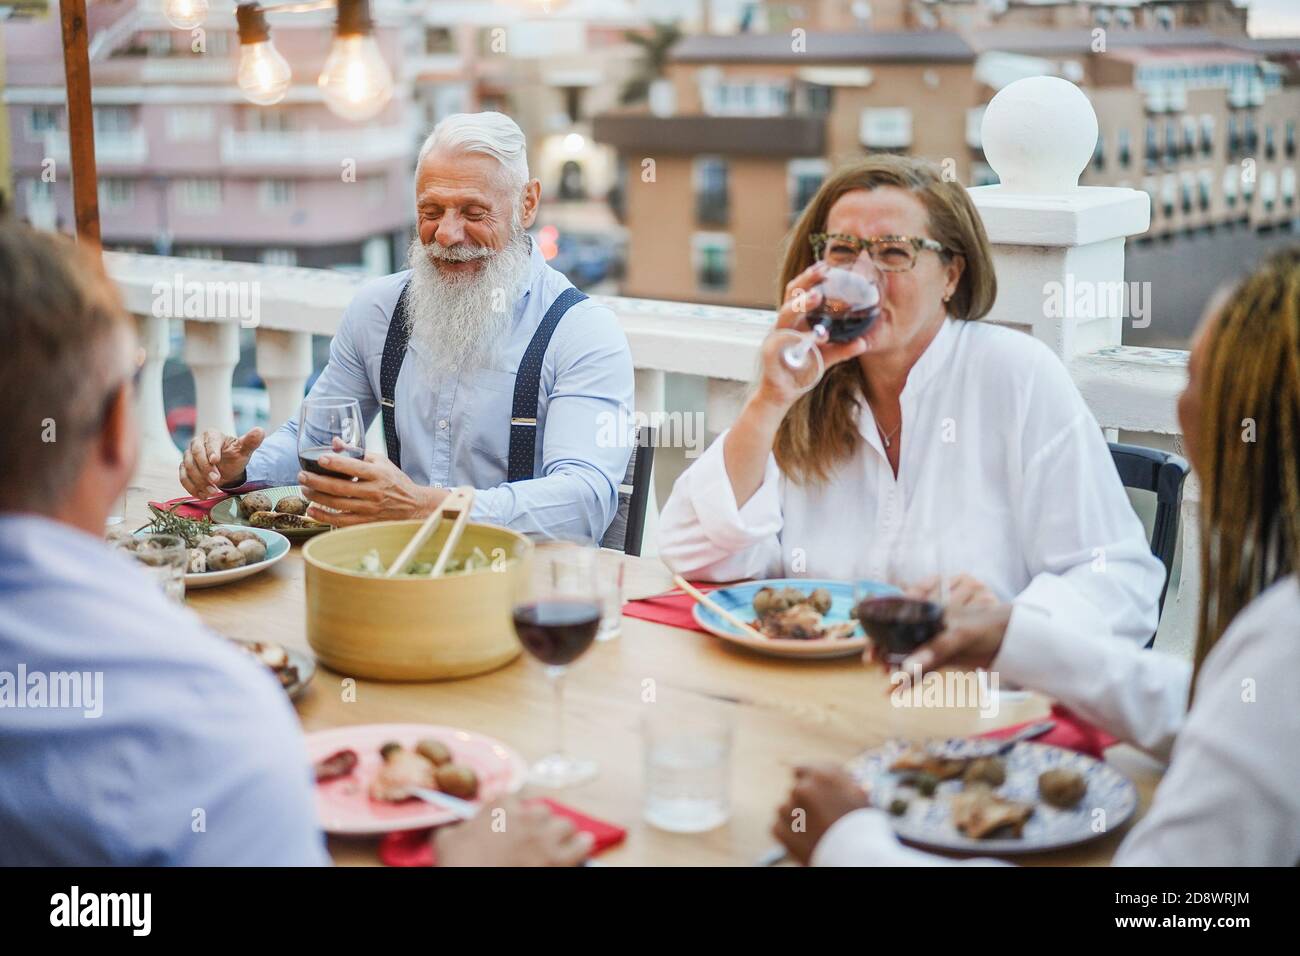 Ältere, multirassische Menschen, die beim Abendessen auf der Terrasse Spaß haben - glücklich Friends Eating at sunday Meal - Fokus auf Hipster Mann Gesicht Stockfoto